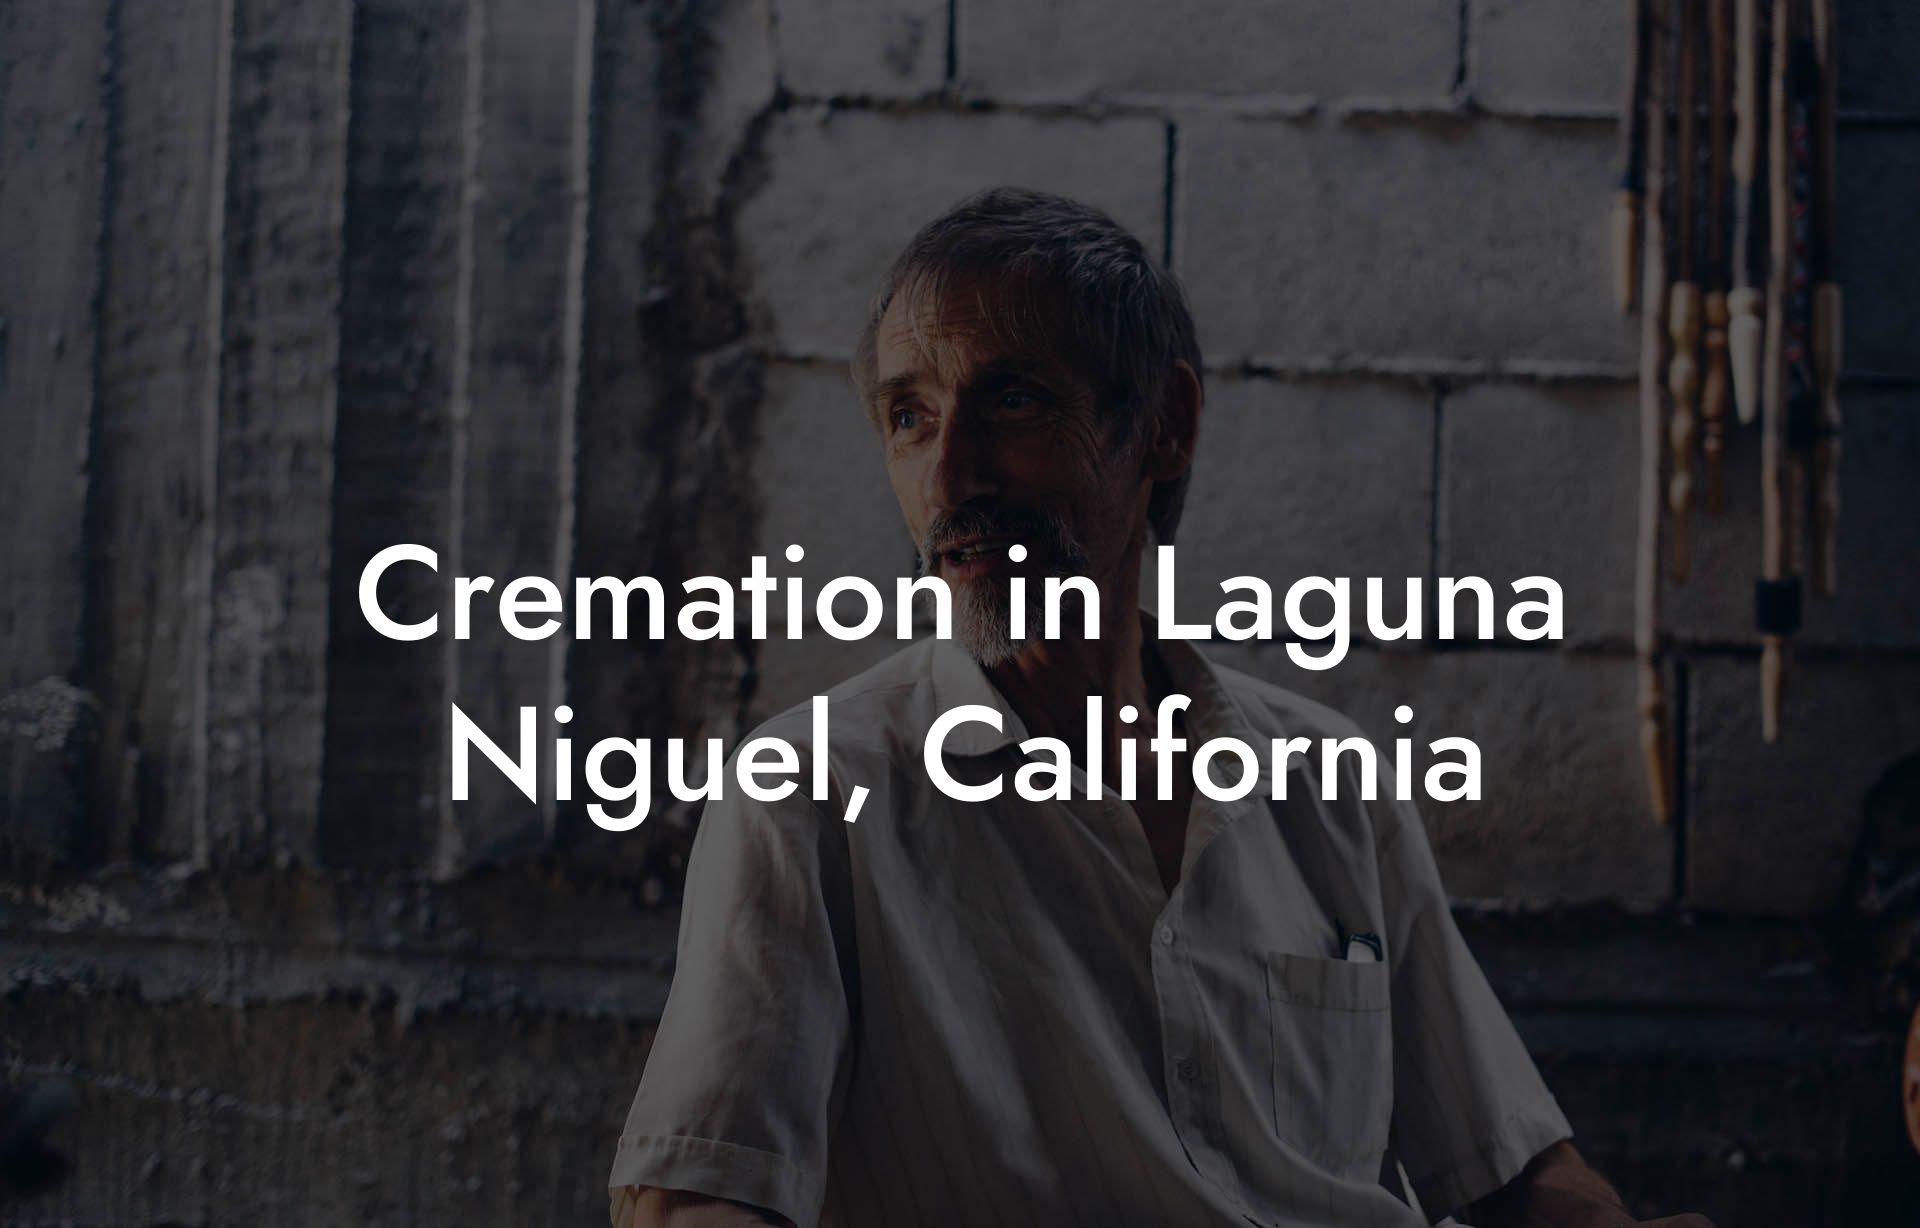 Cremation in Laguna Niguel, California